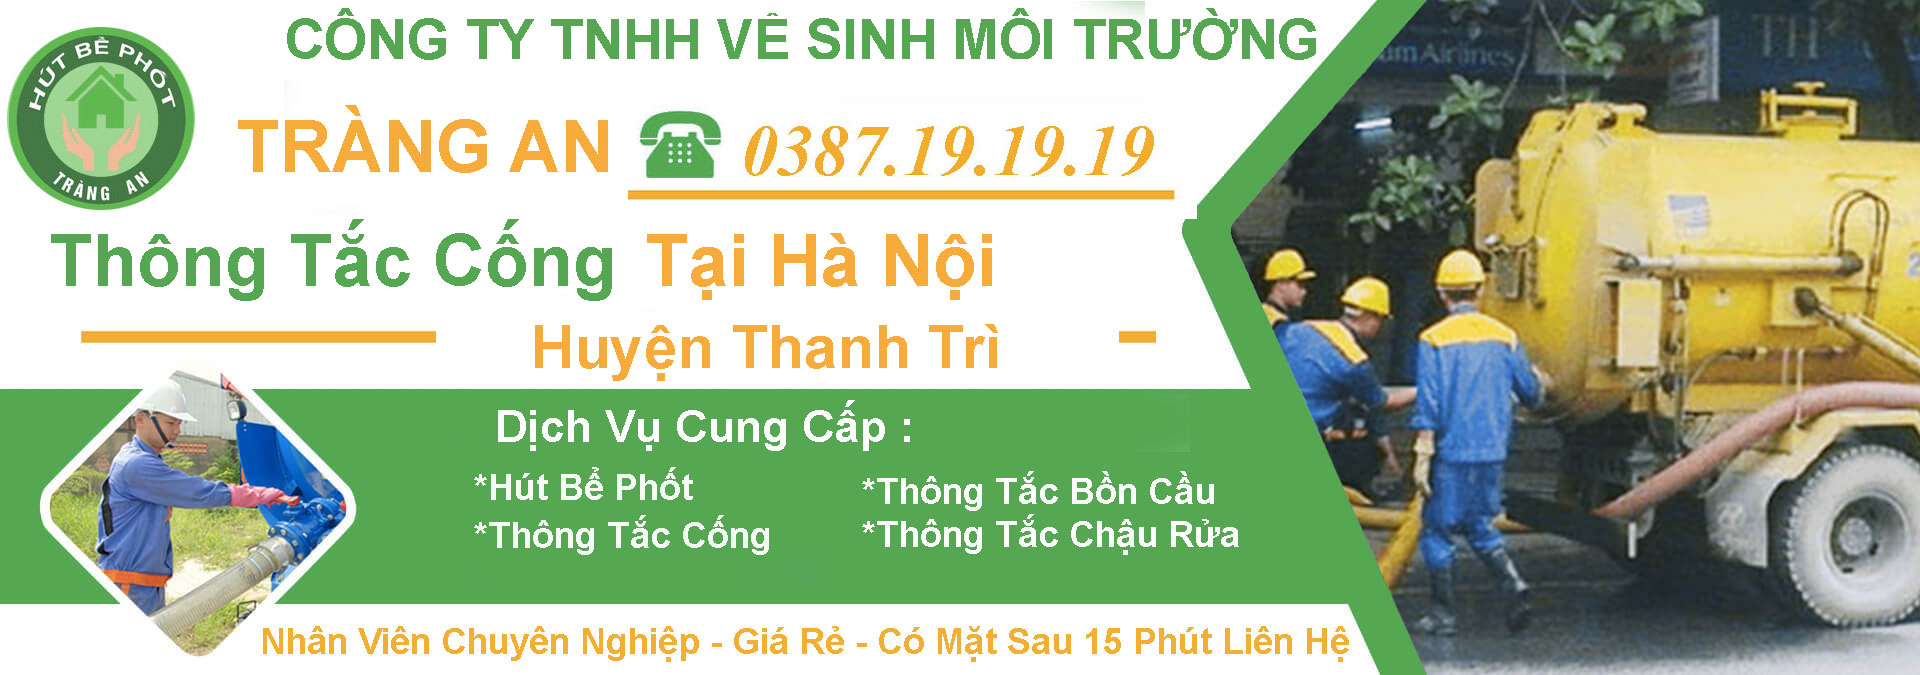 #1 Thông Tắc Cống Tại Huyện Thanh Trì【Tràng An】5OK -BH 5 Năm